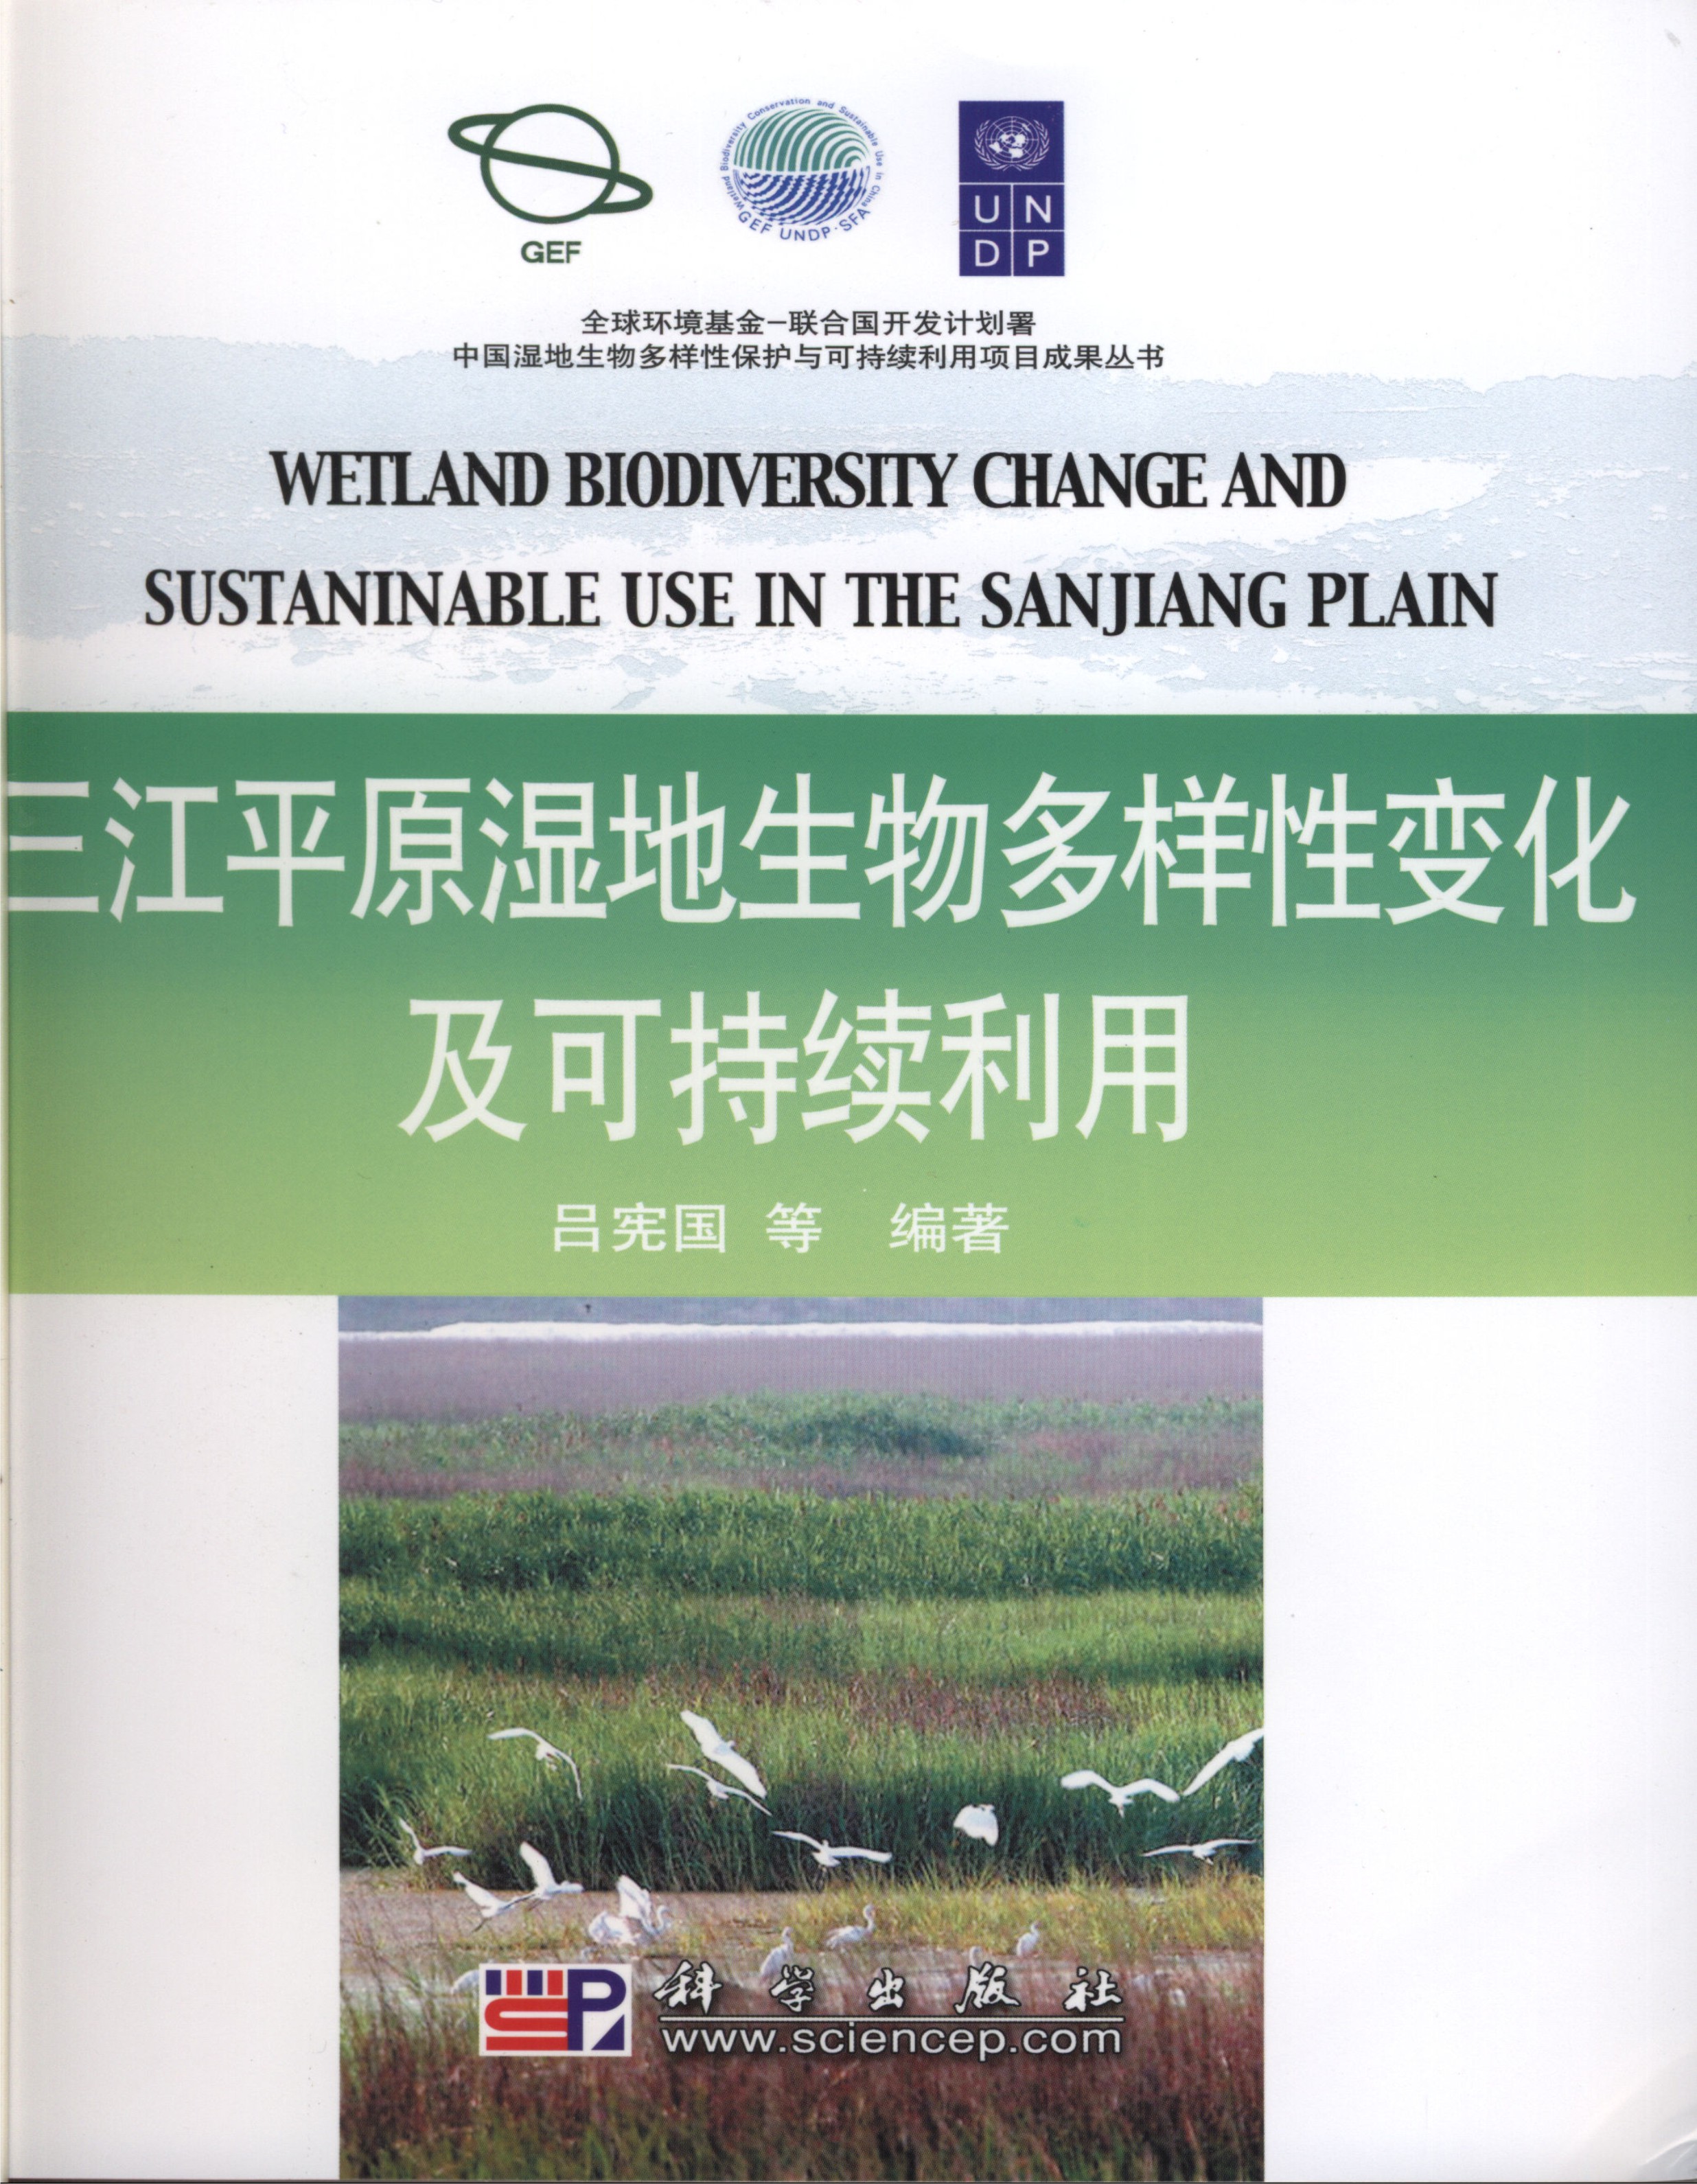 三江平原湿地生物多样性变化及可持续利用.jpg